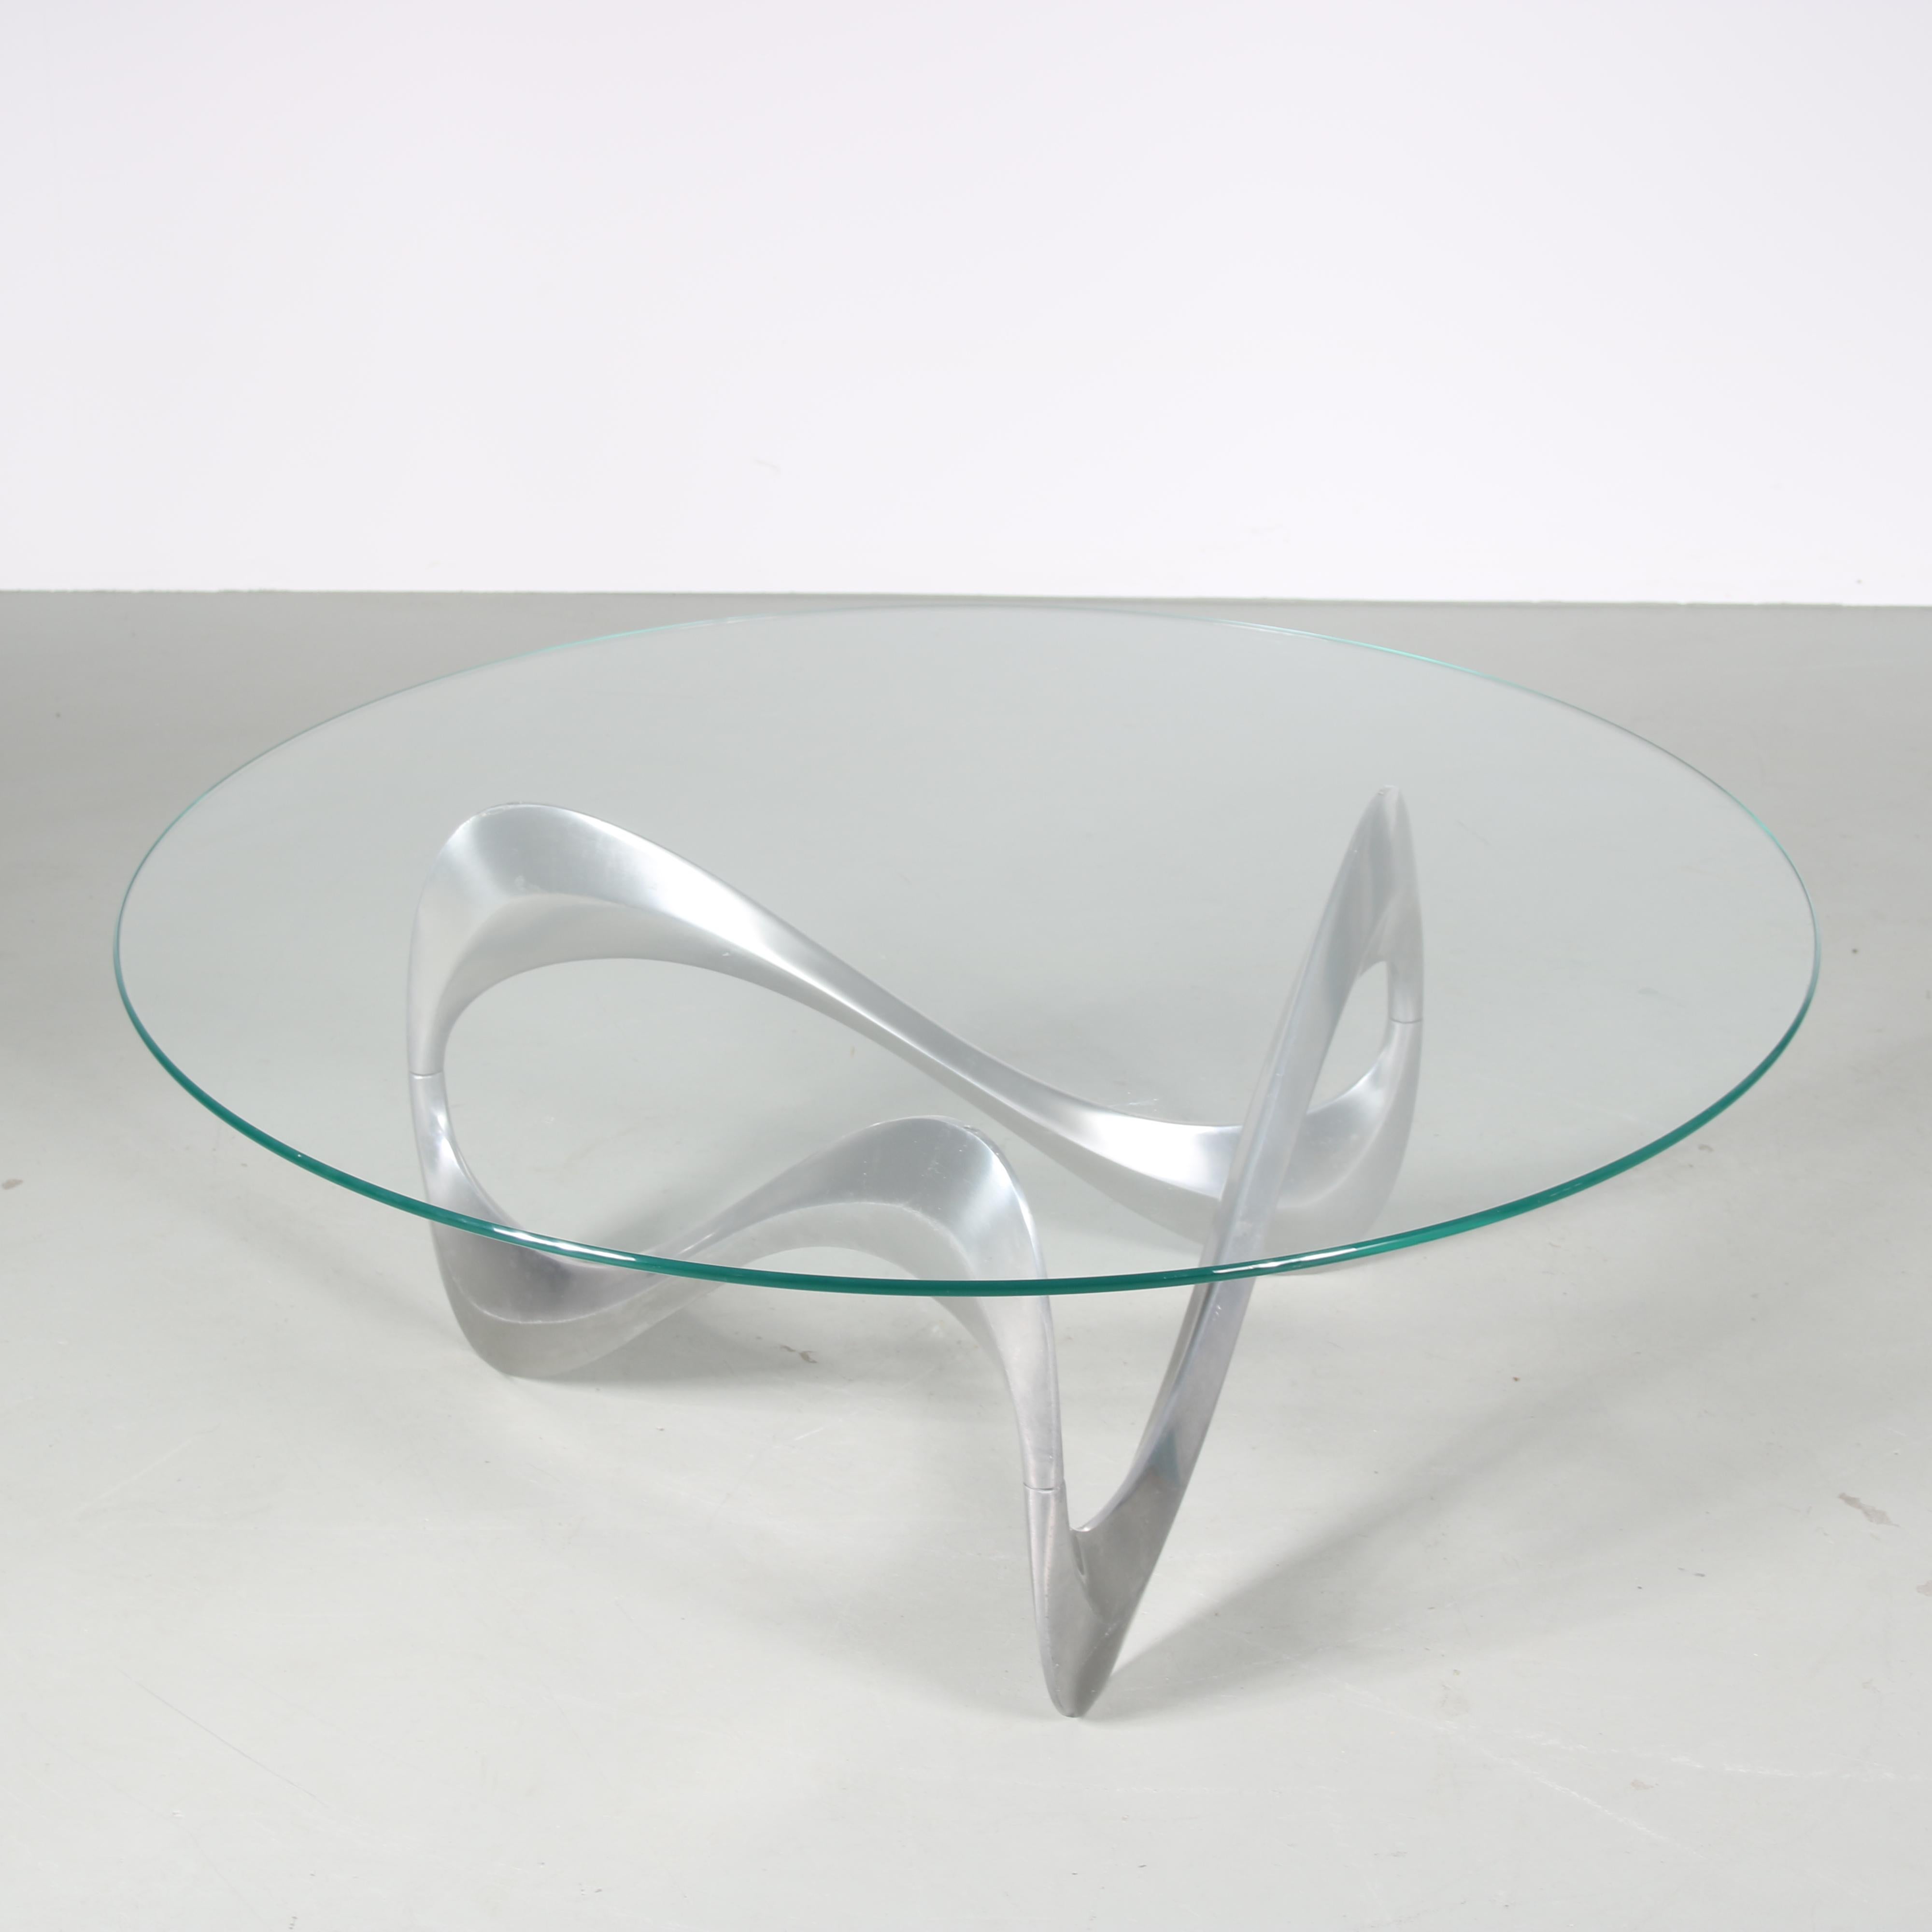 Danish Knut Hesterberg “Snake” Coffee Table for Ronald Schmitt, Denmark, 1970